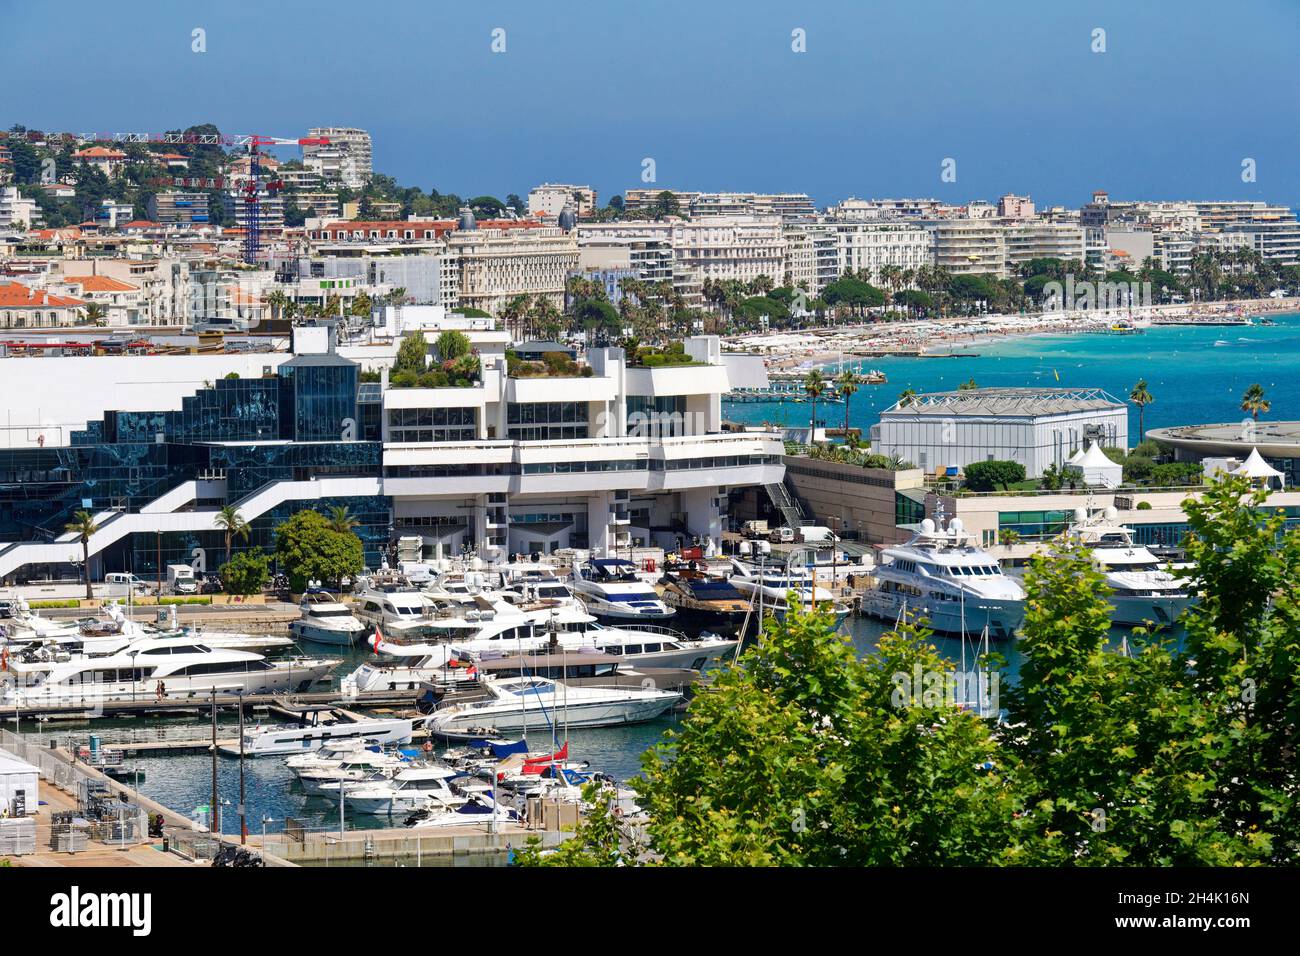 France, Alpes Maritimes, Cannes, Port and Palais des Festivals Stock Photo